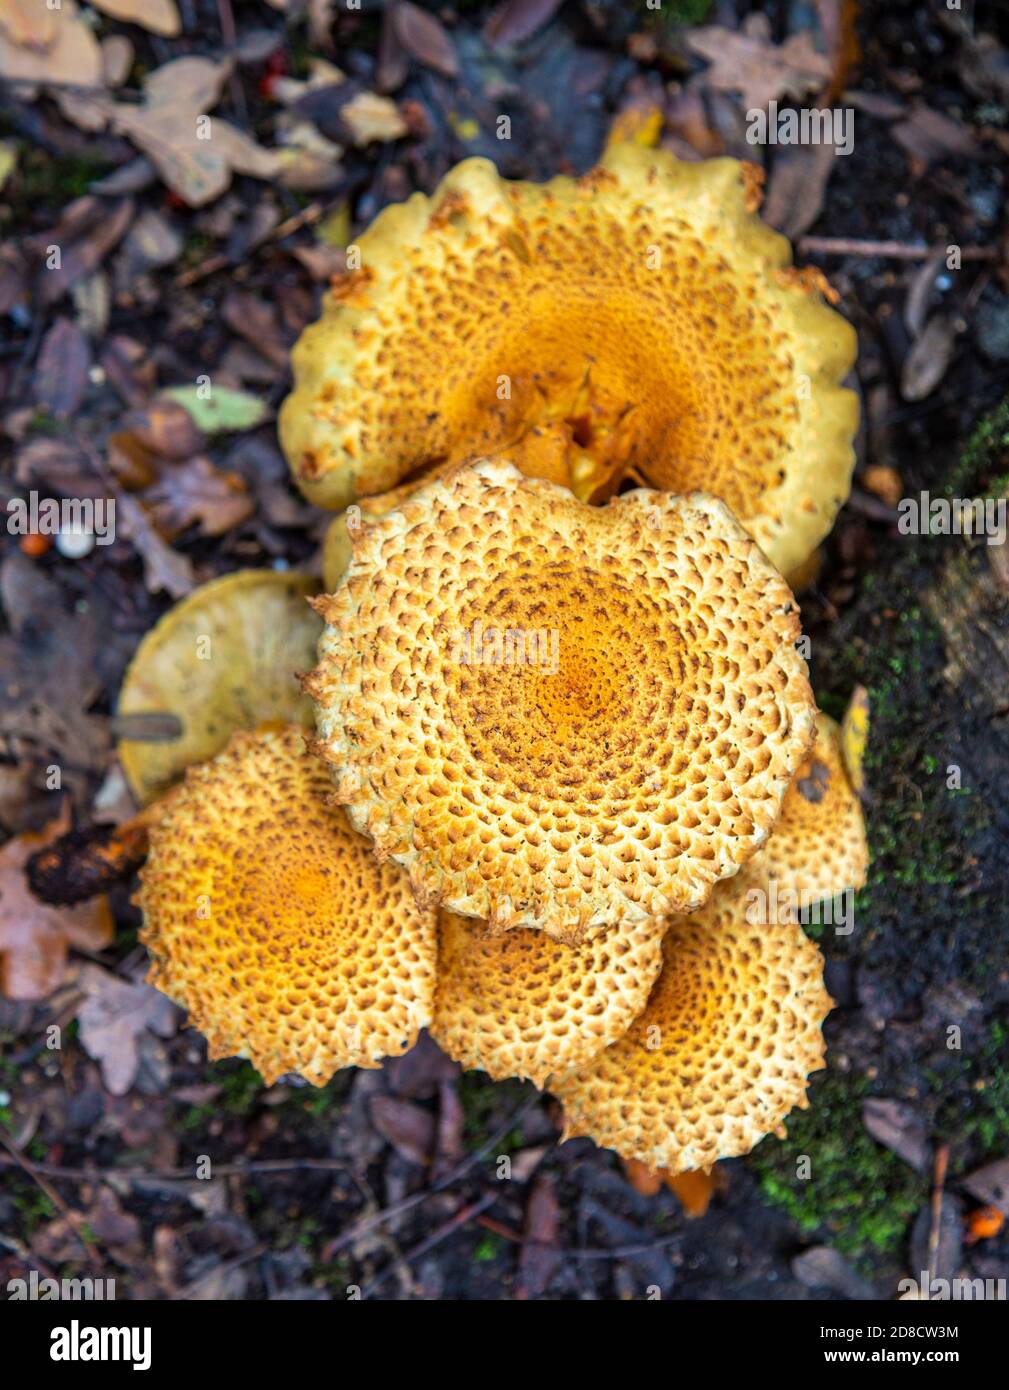 Shaggy Pholiota Squarrosa fungo che cresce sotto antico albero di quercia, Butley, Suffolk, Inghilterra, UK Foto Stock